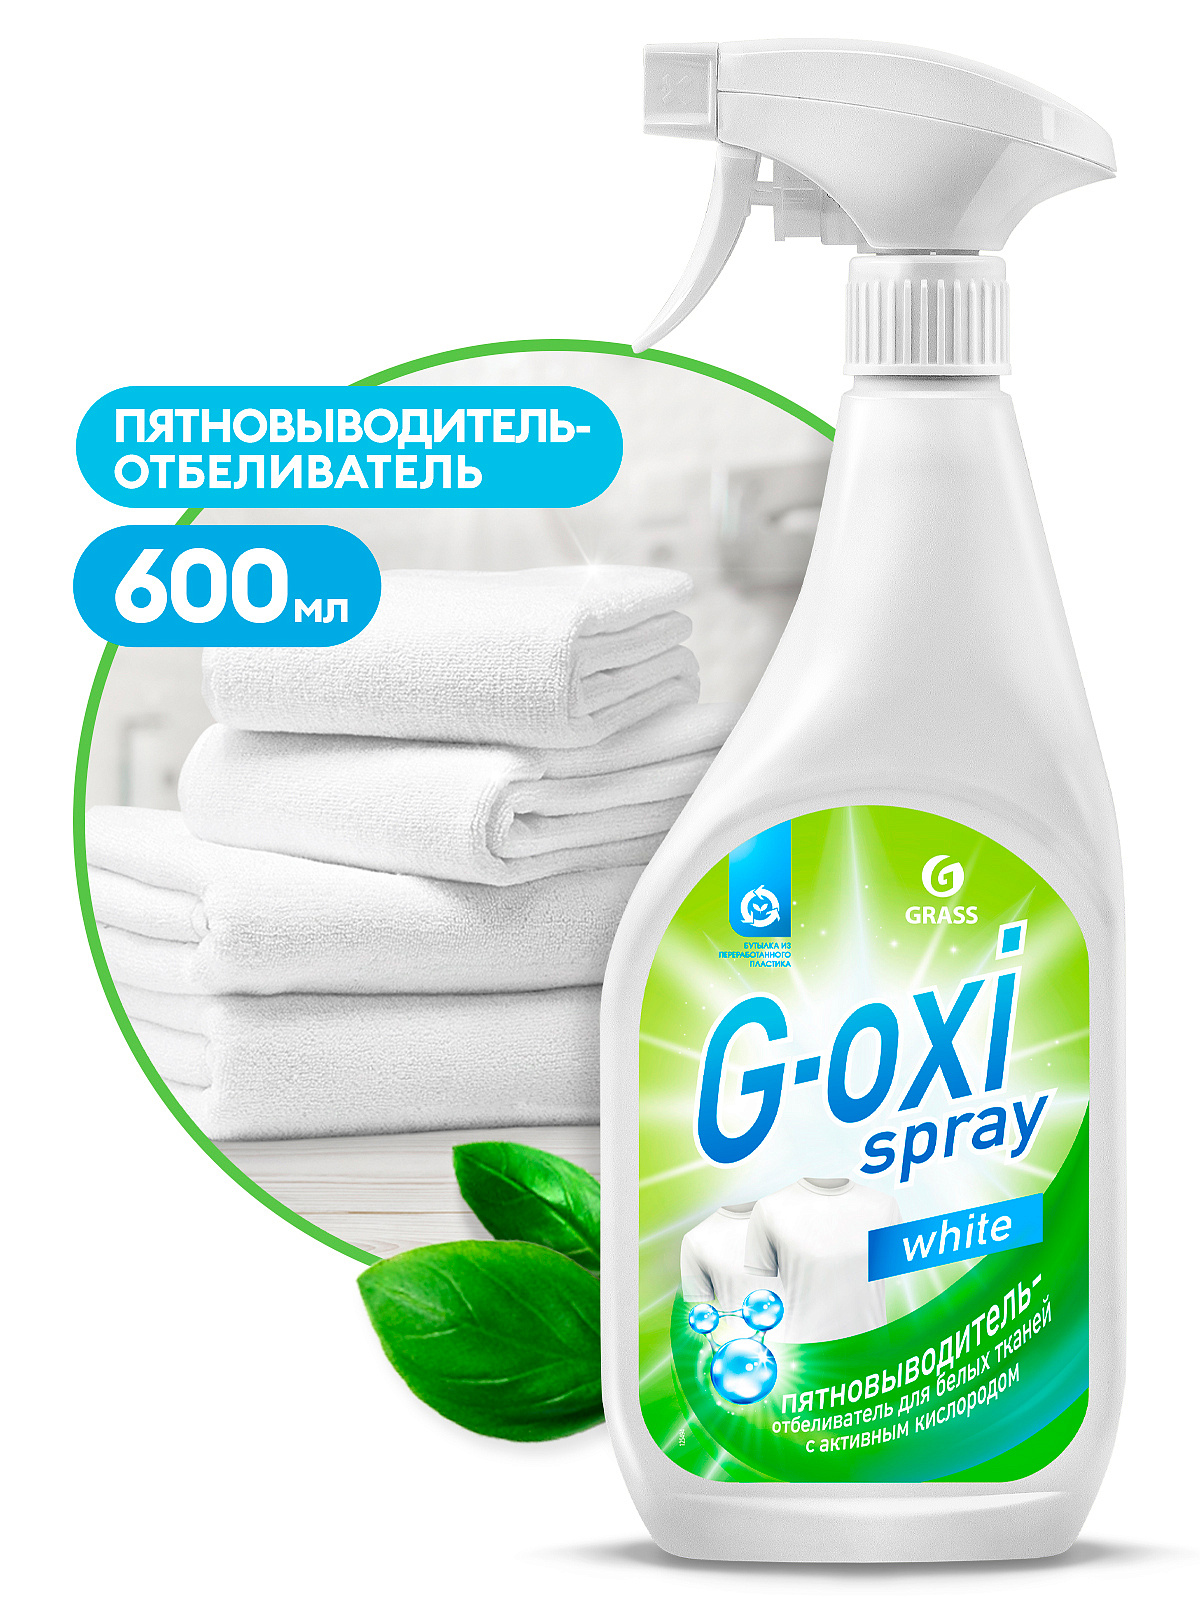 Пятновыводитель-отбеливатель  "G-oxi spray"